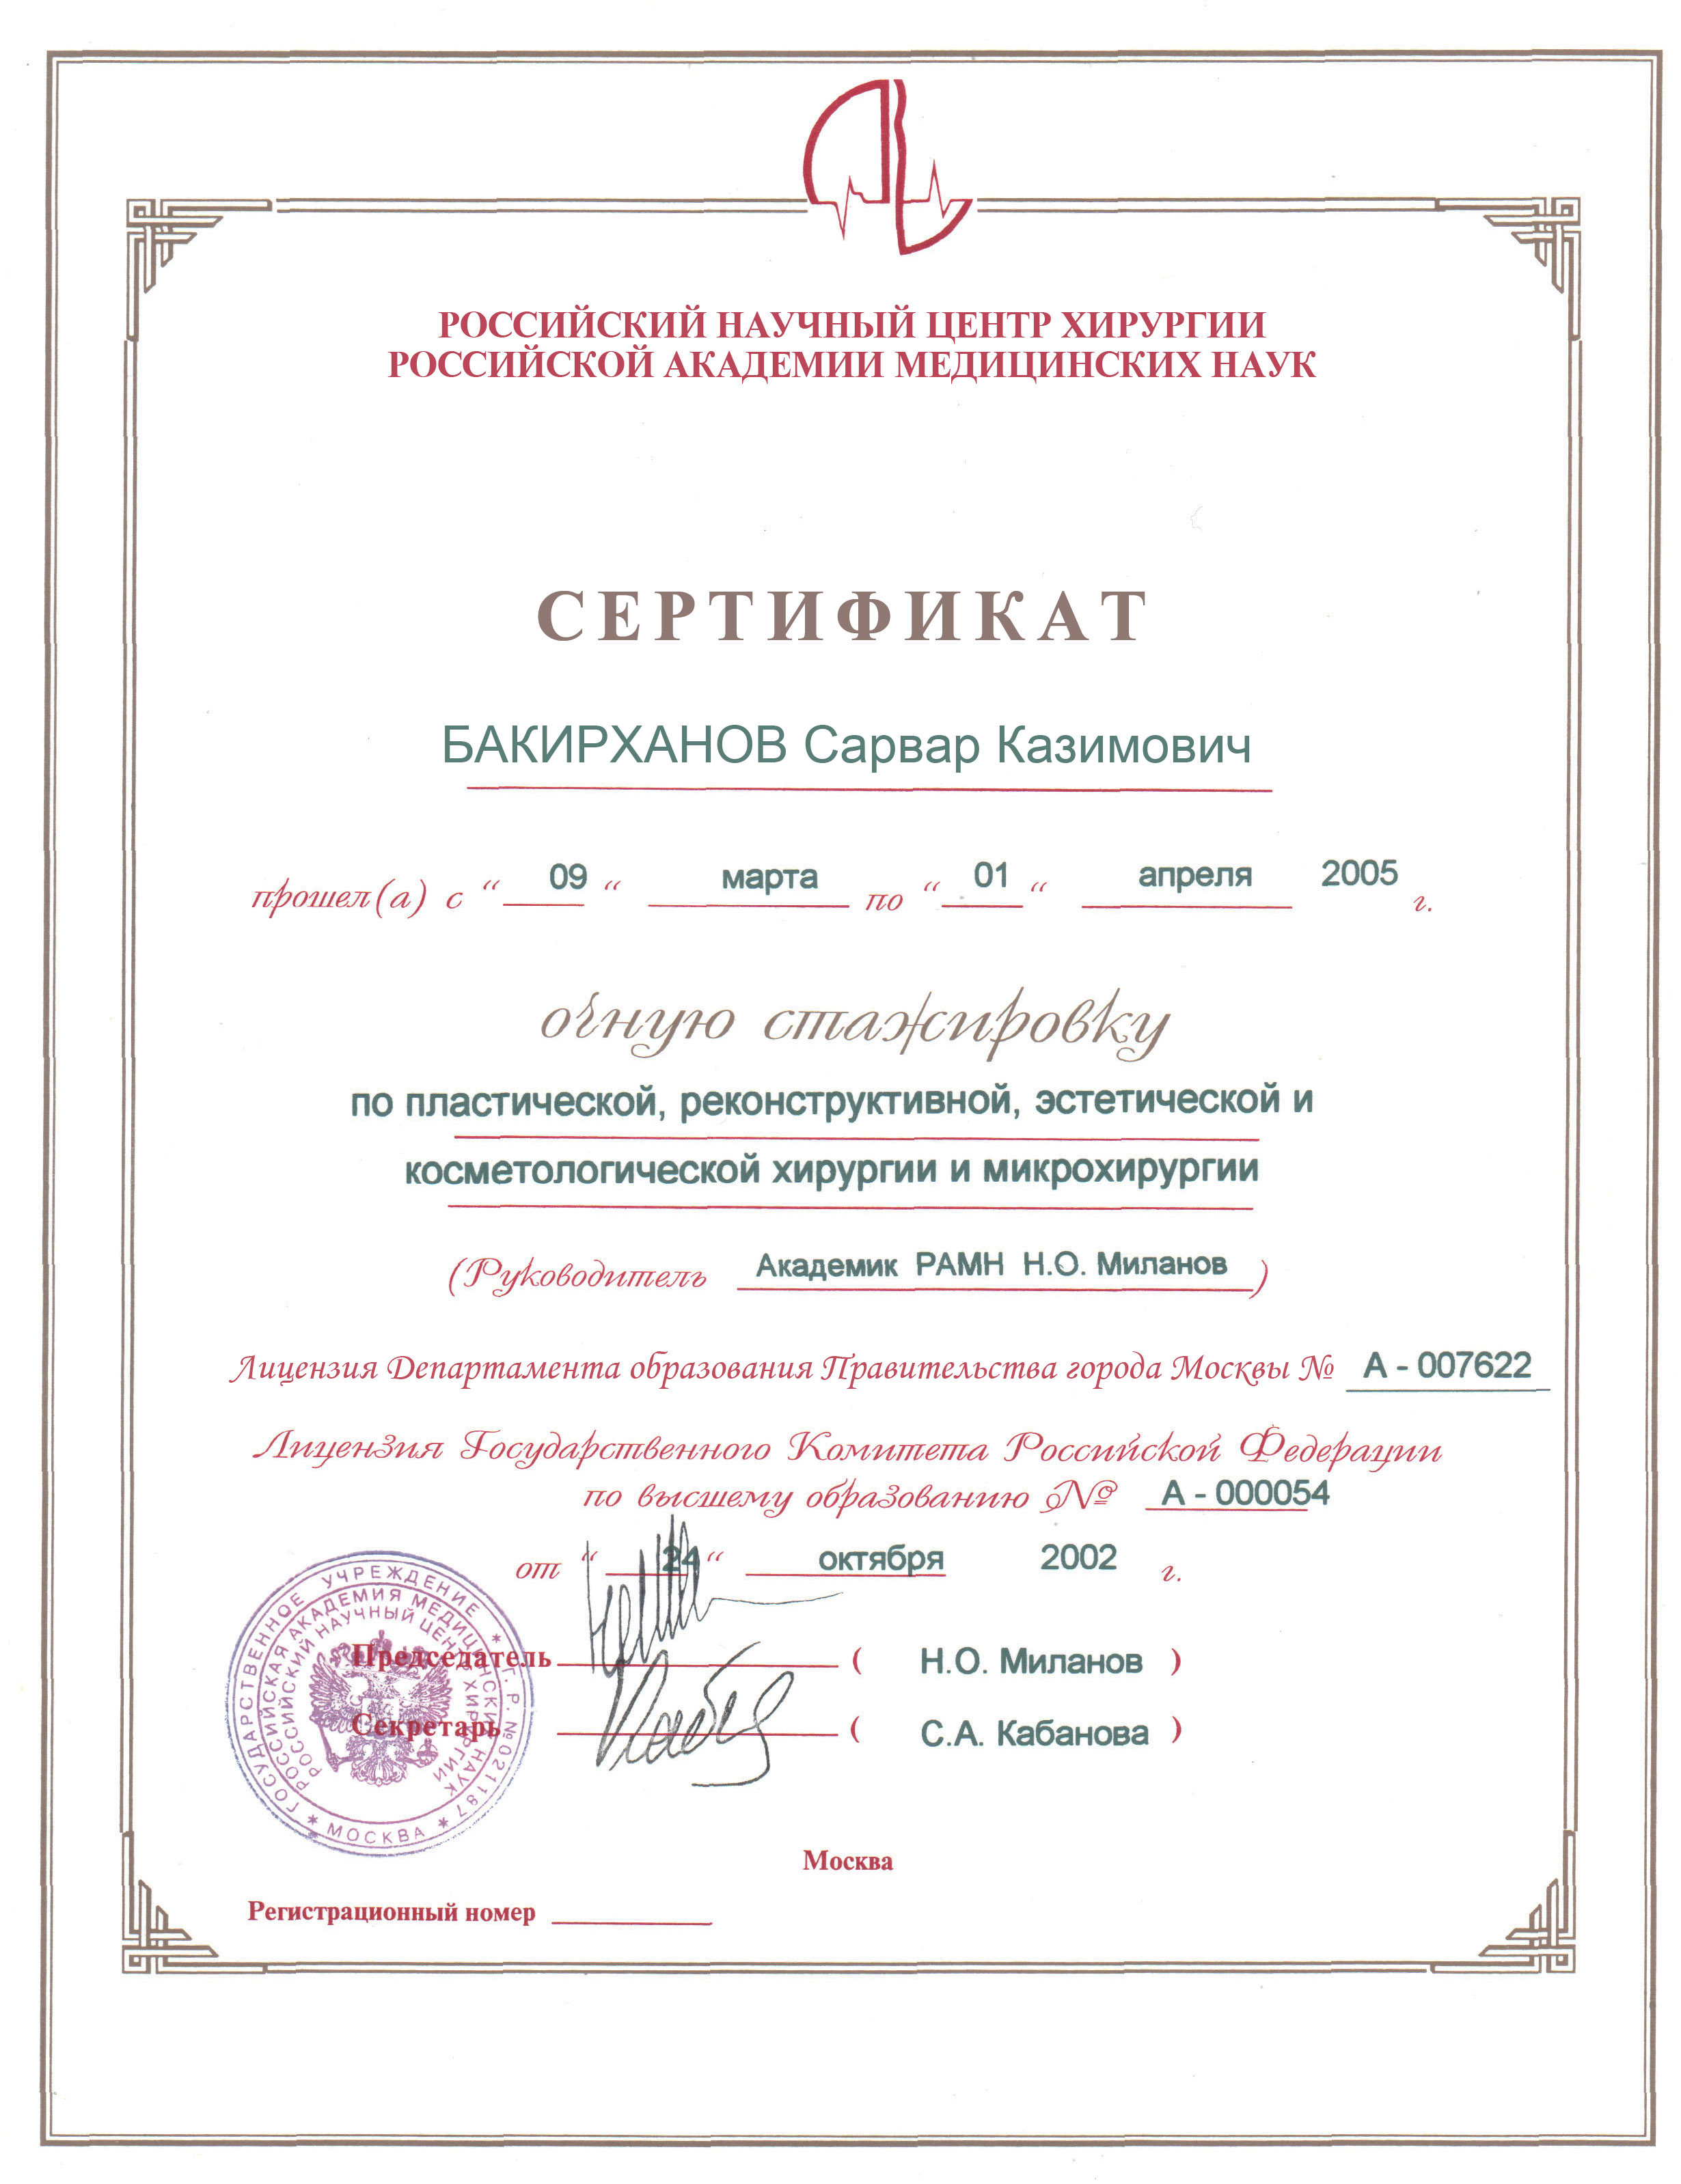 Сертификат очной стажировки по пластической, реконструктивной, эстетической и косметологической хирургии и микрохирургии